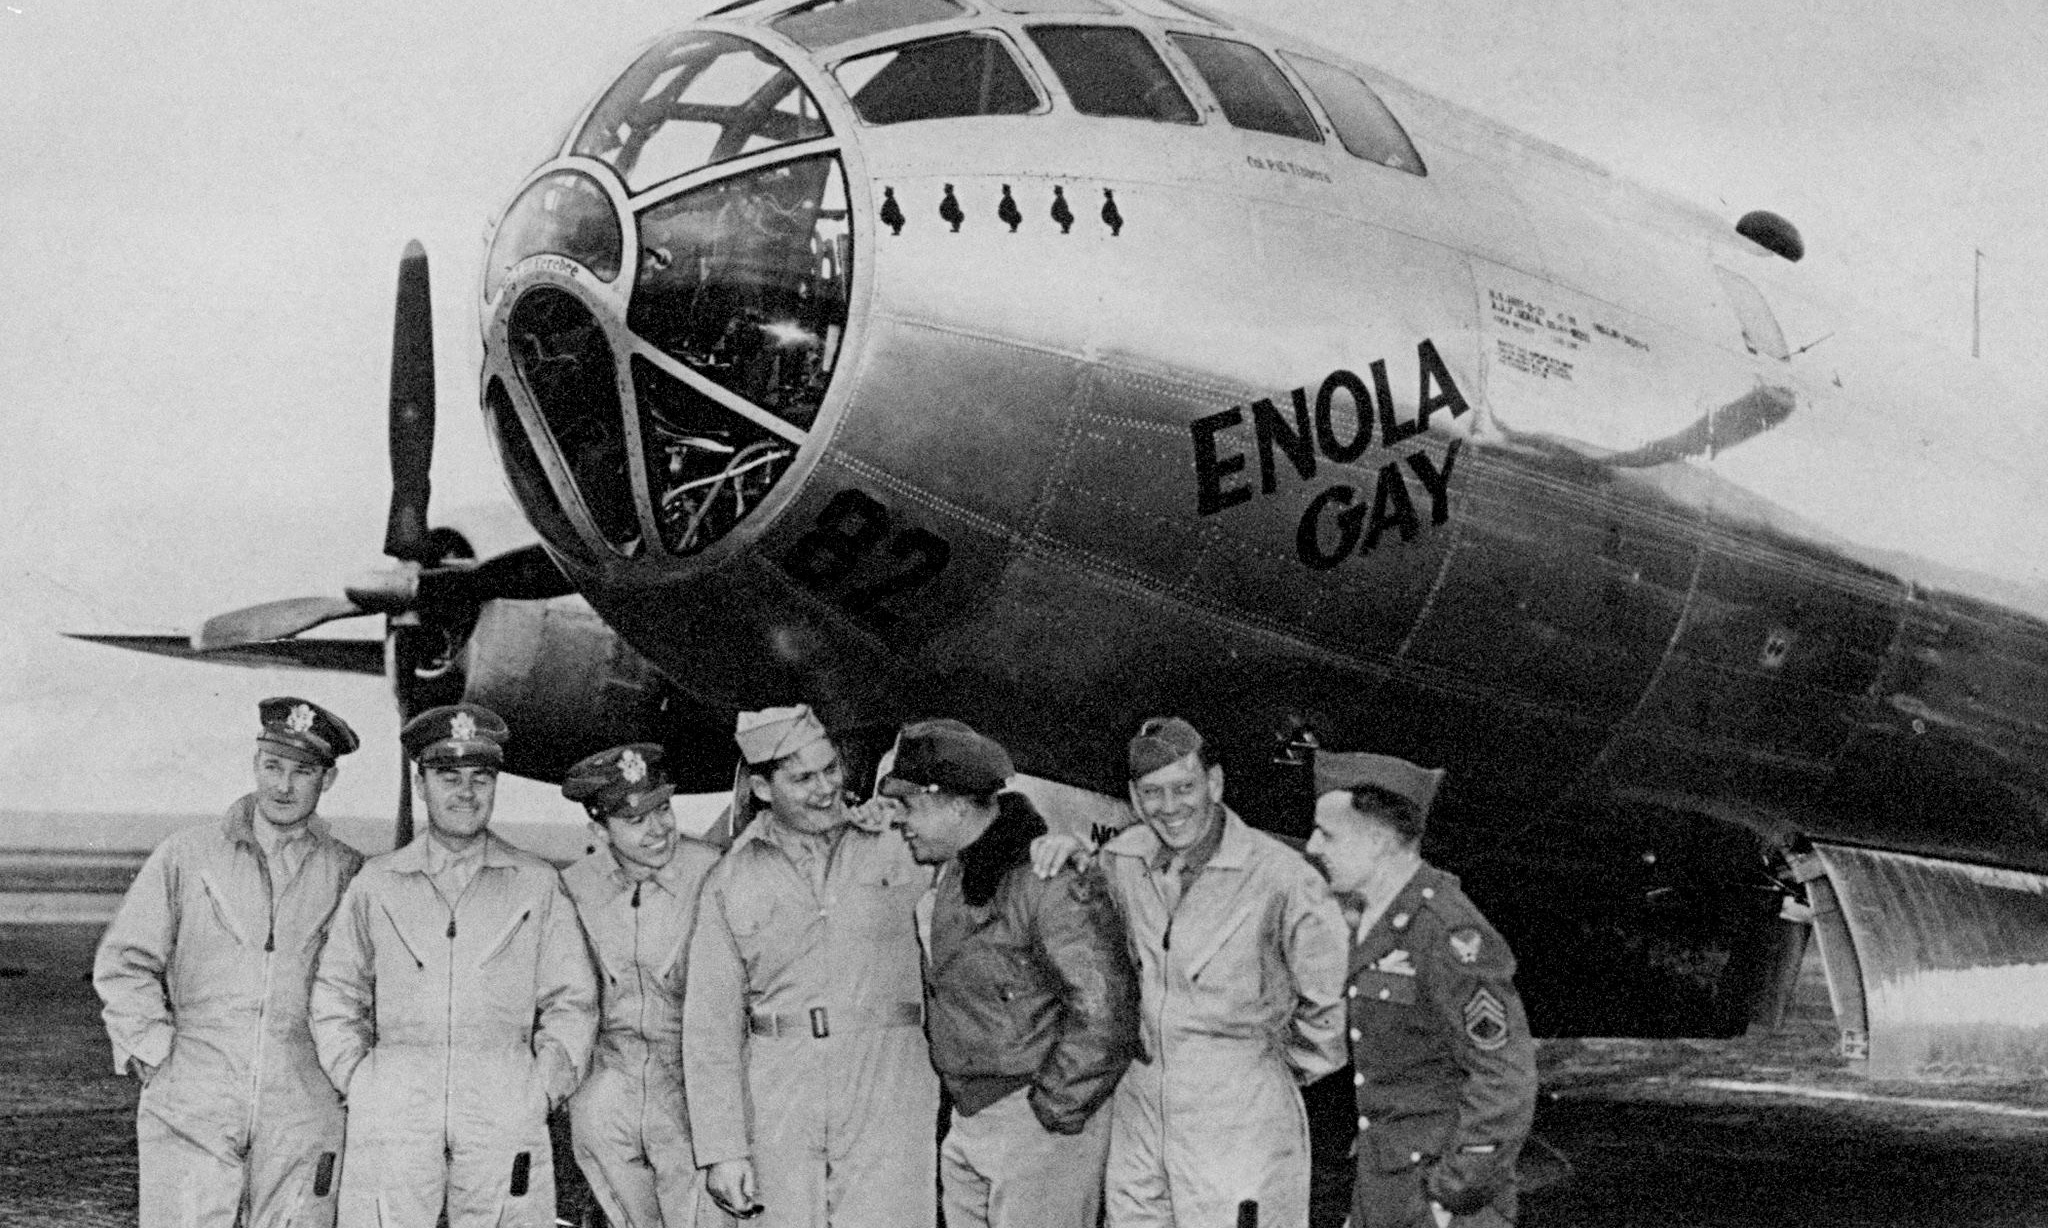 flight crew of the enola gay